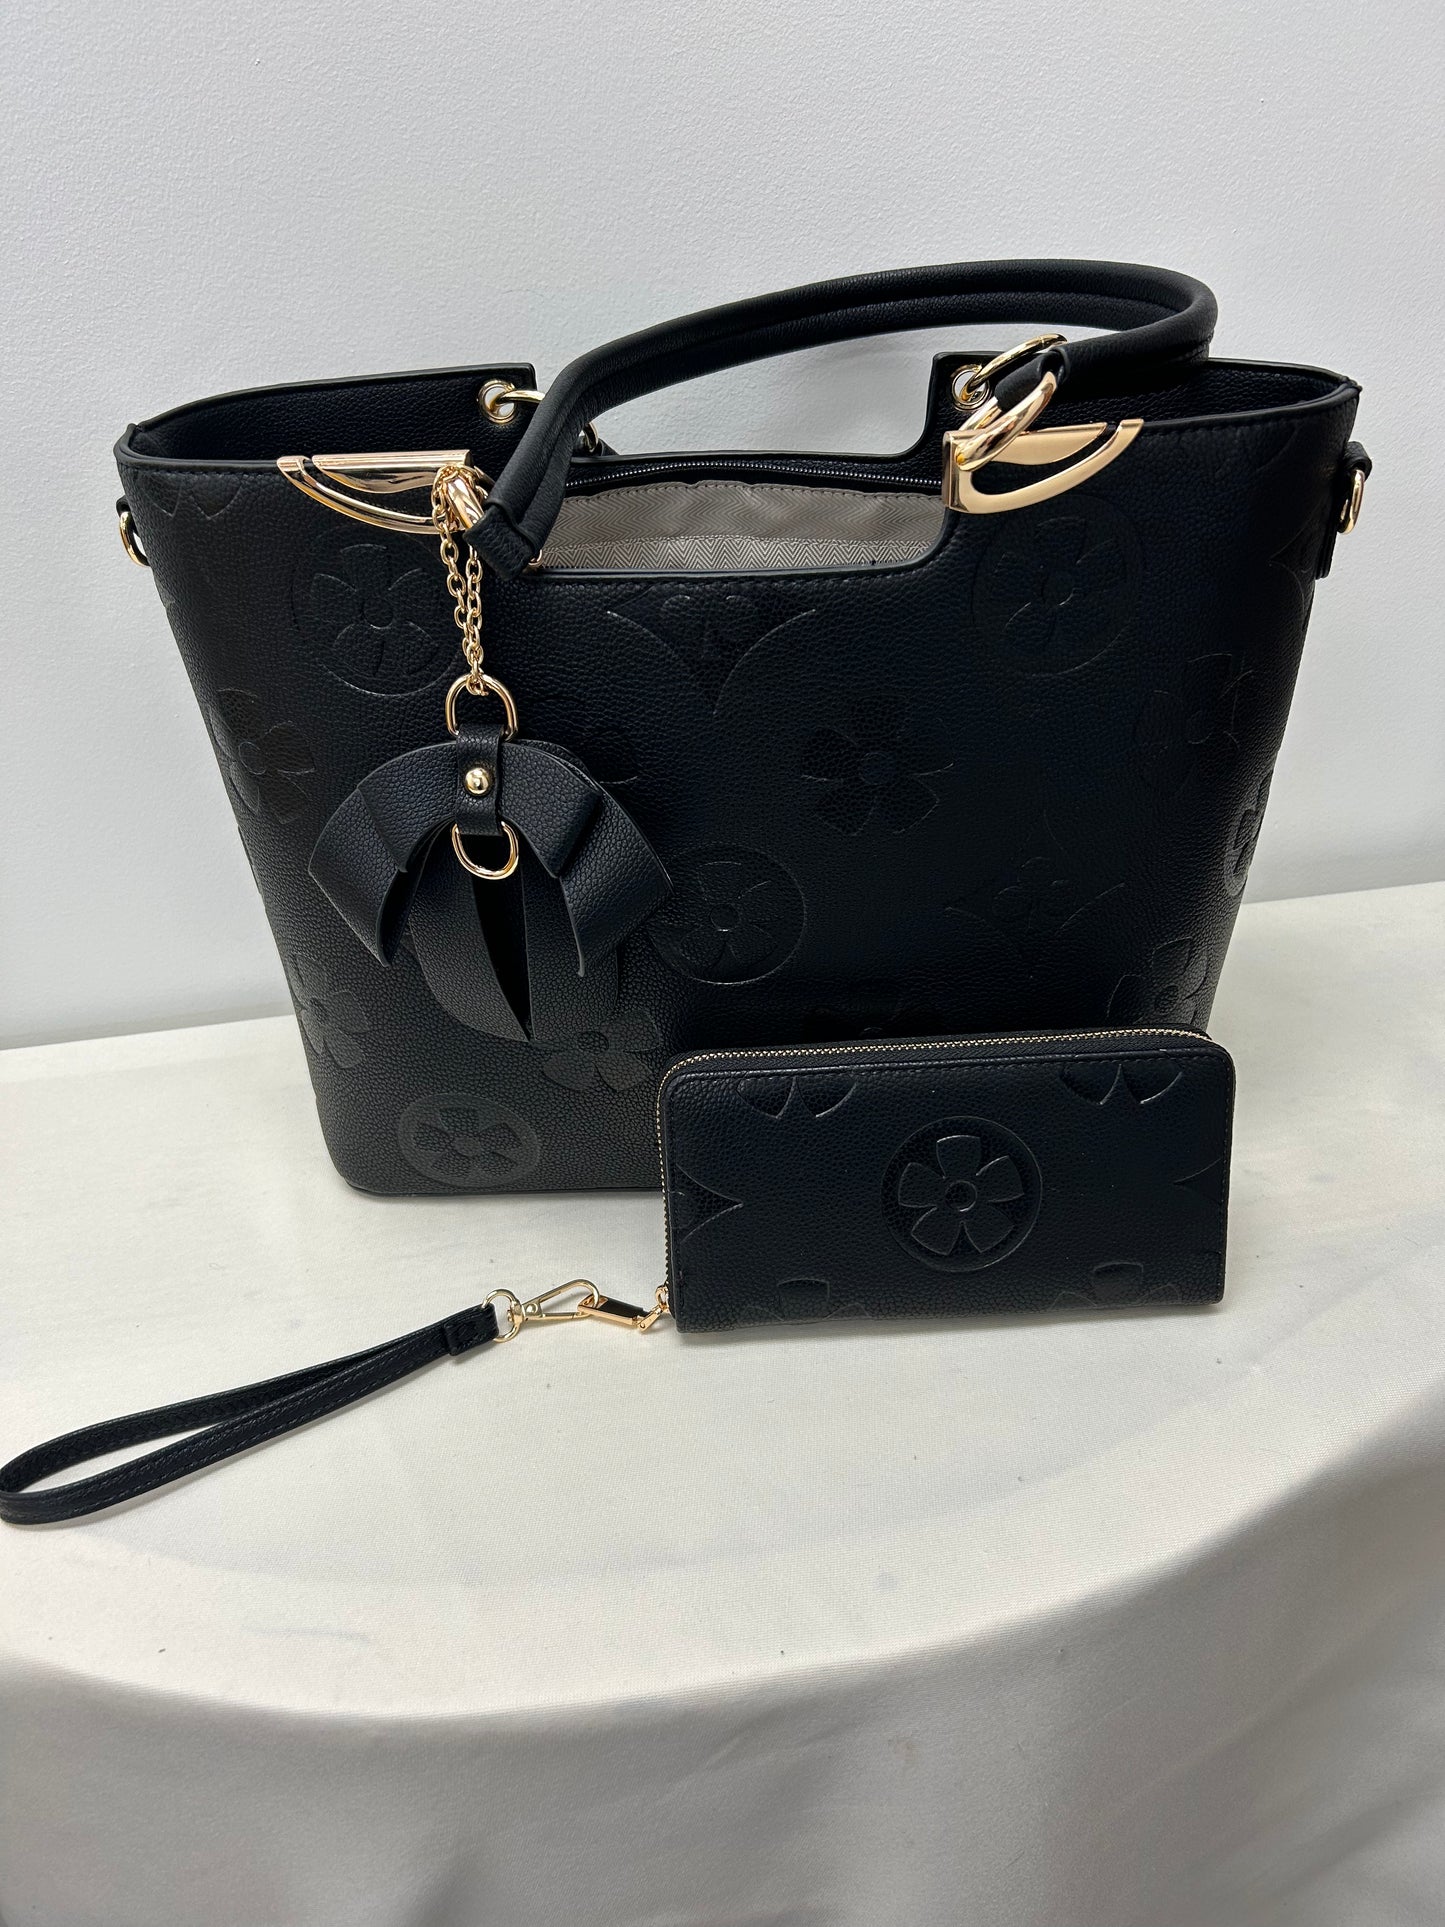 Matching LV inspired handbag and wallet